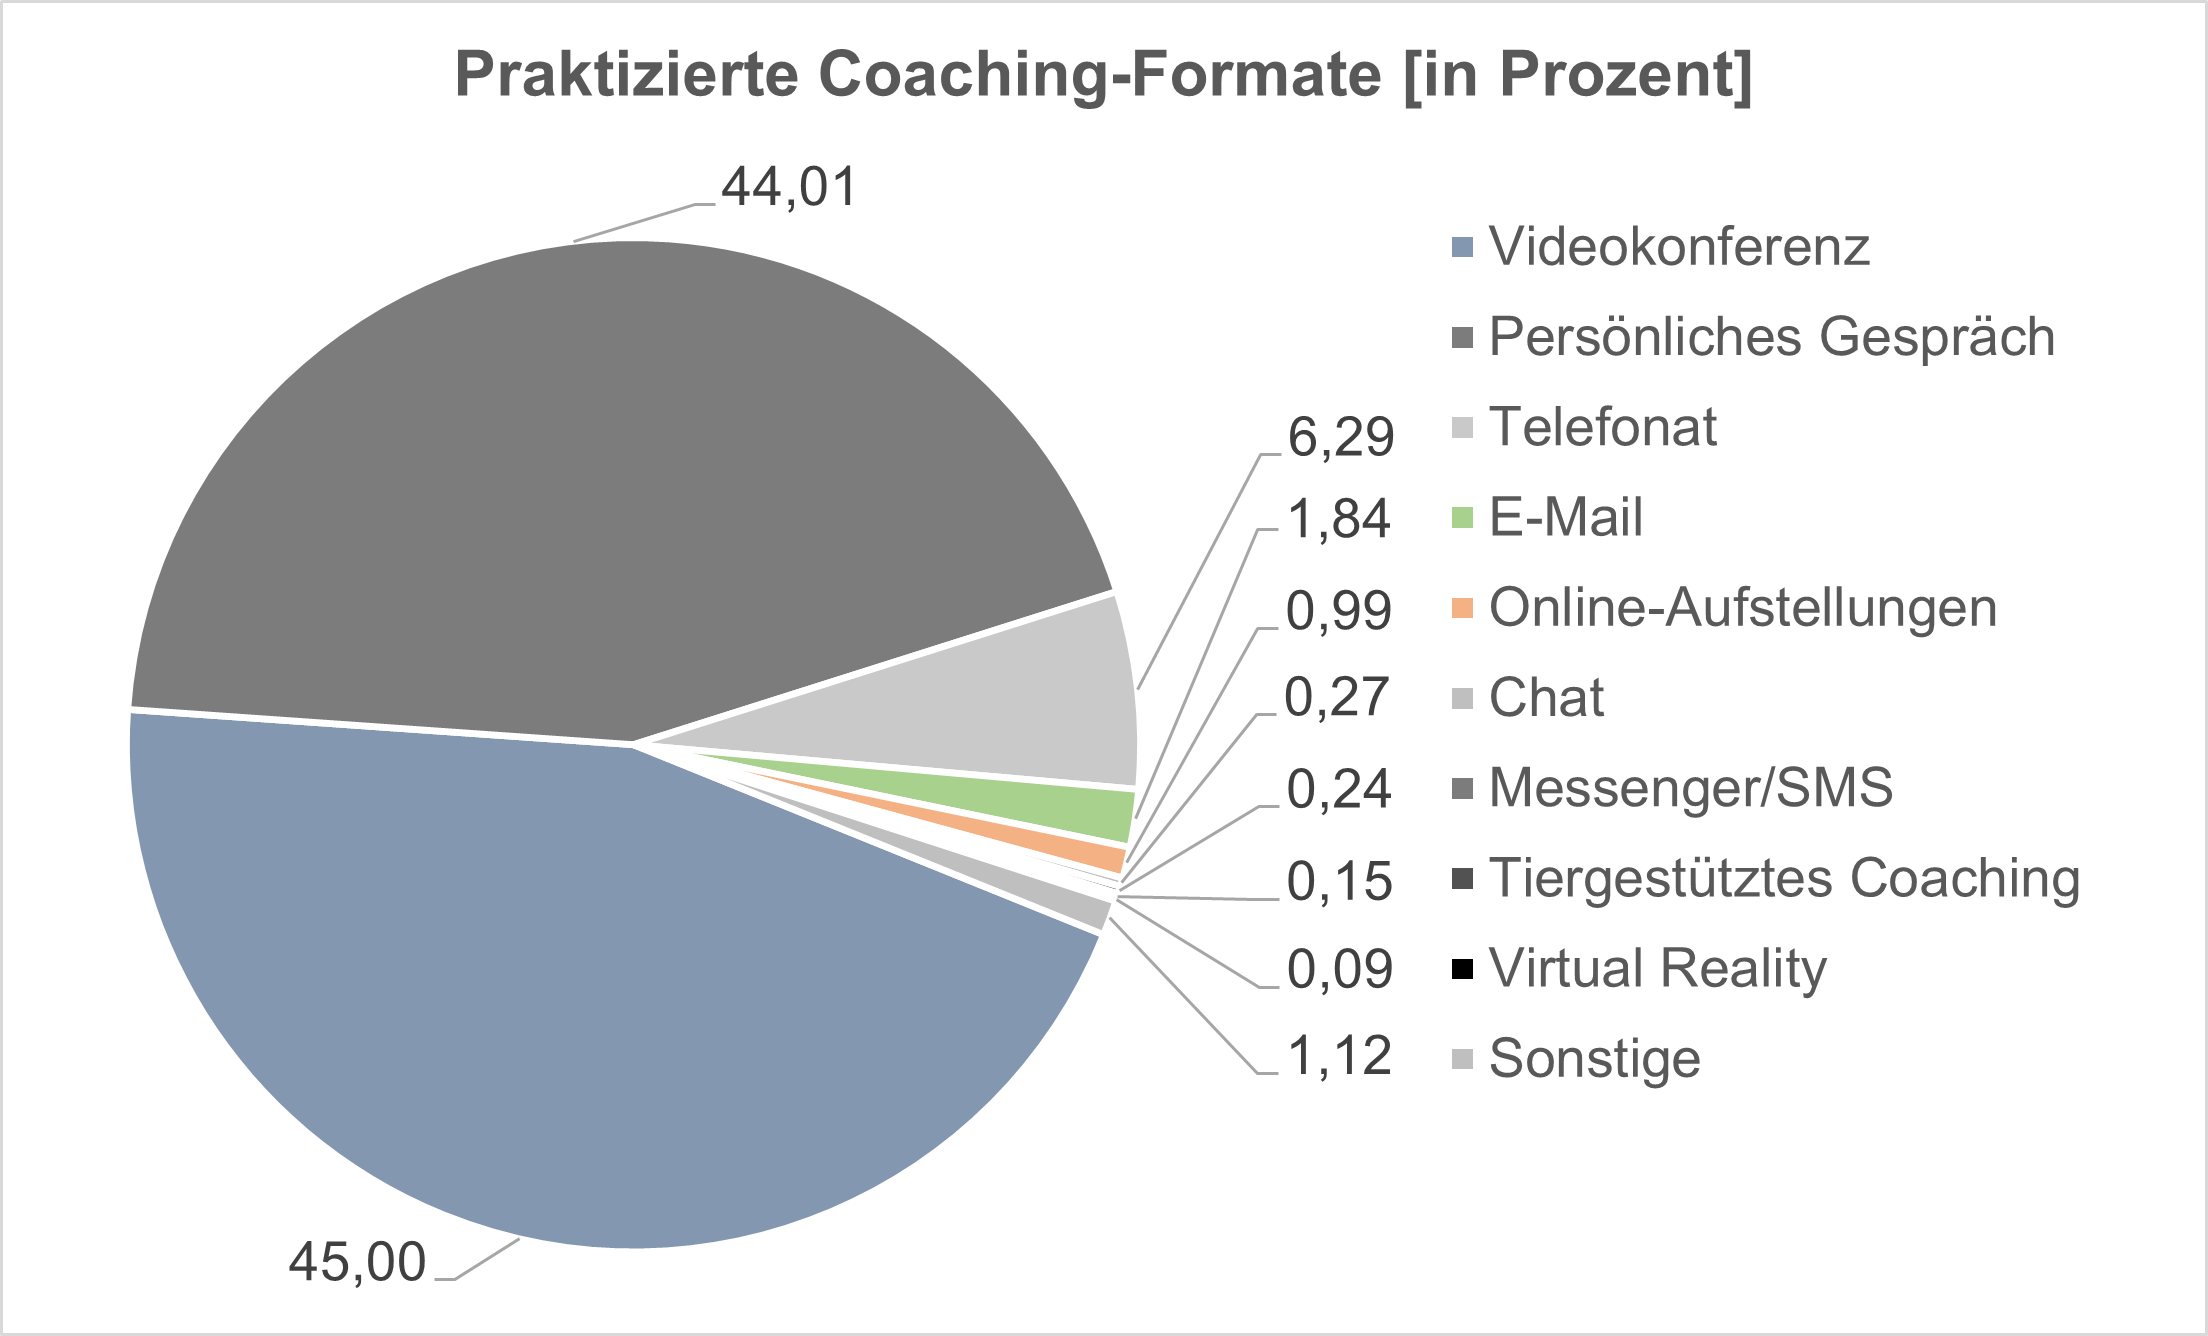 Verteilung der praktizierten Coaching-Formate 